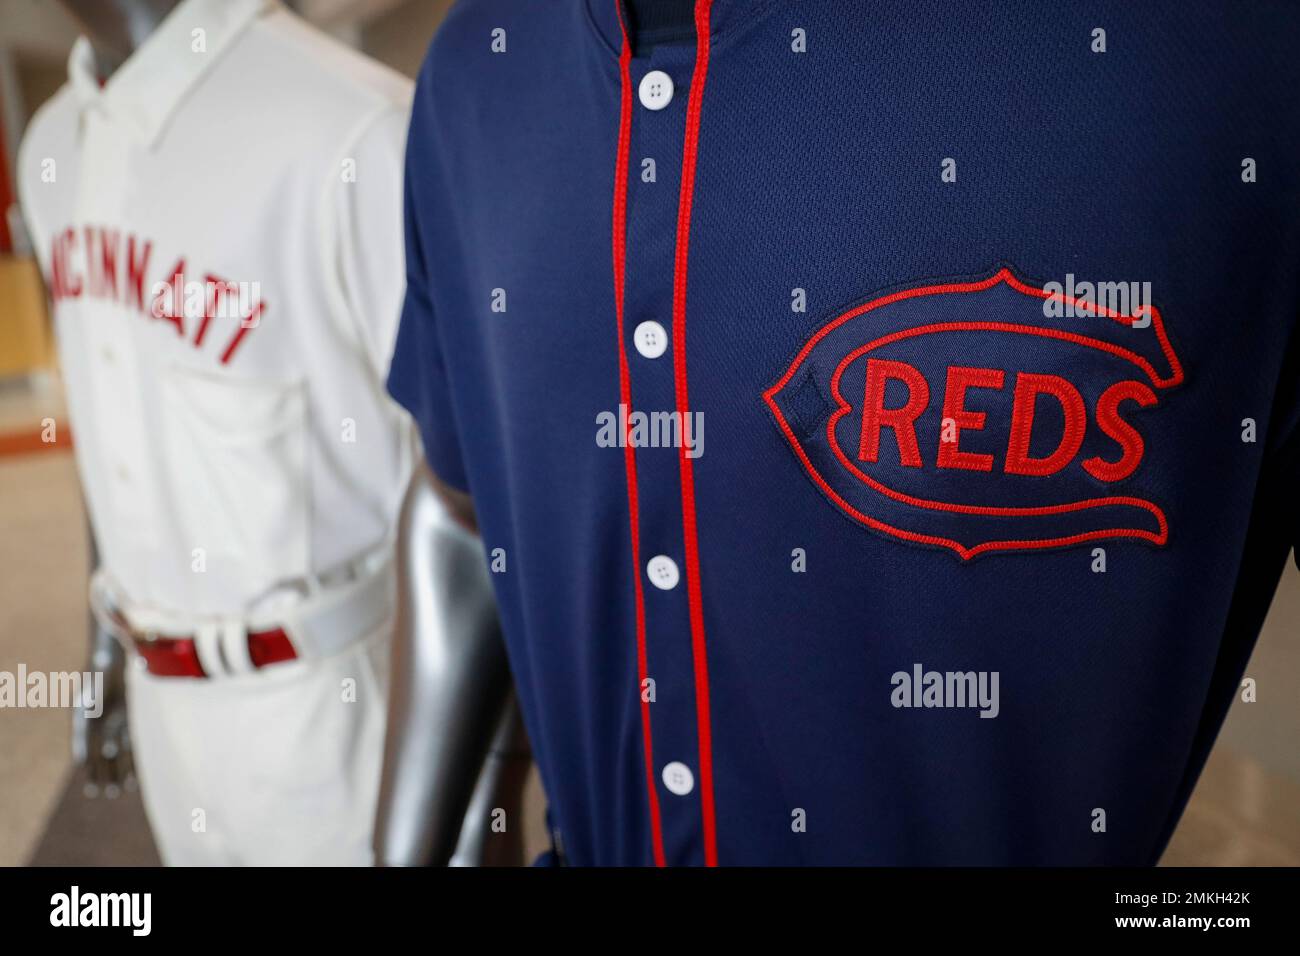 2019 reds throwback uniforms